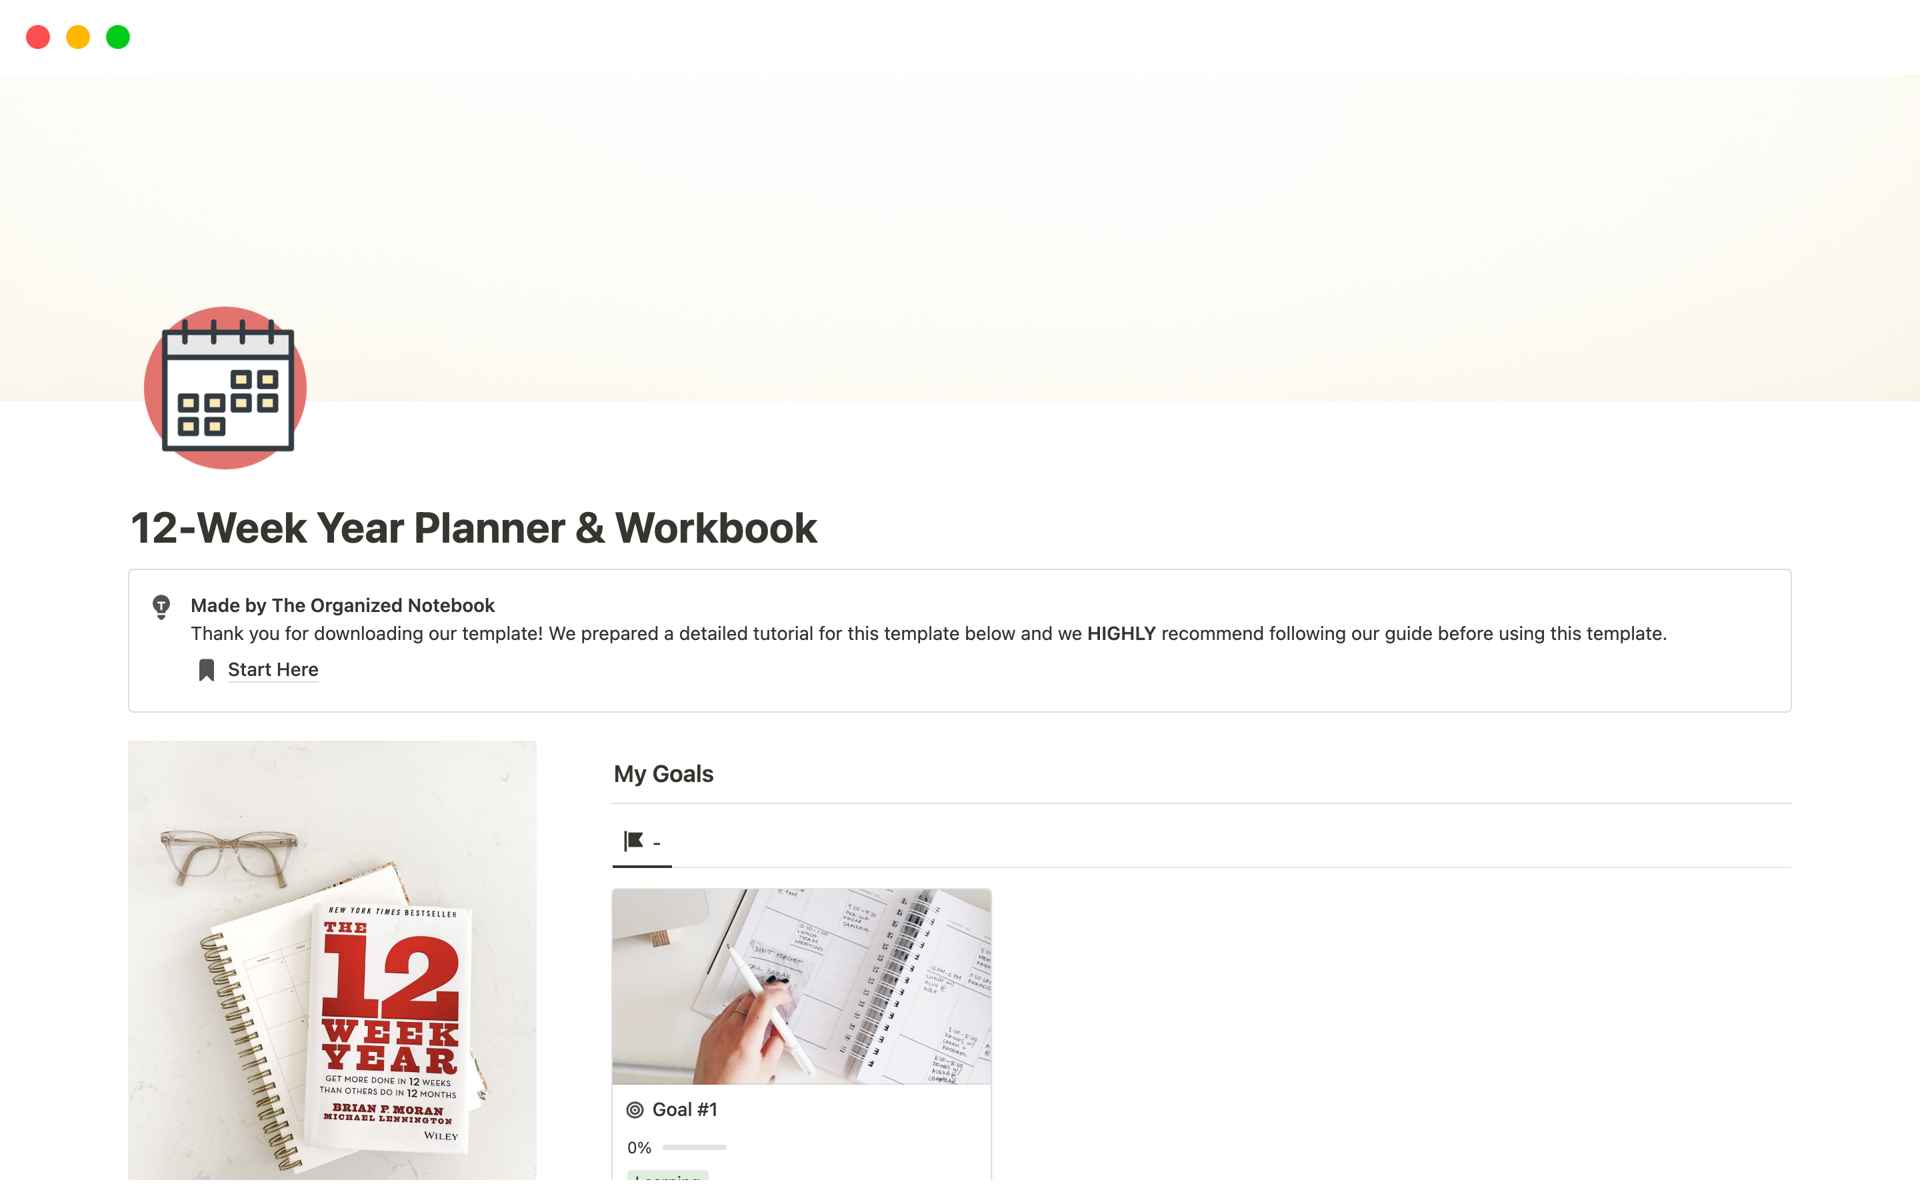 Aperçu du modèle de 12-Week Year Planner & Workbook